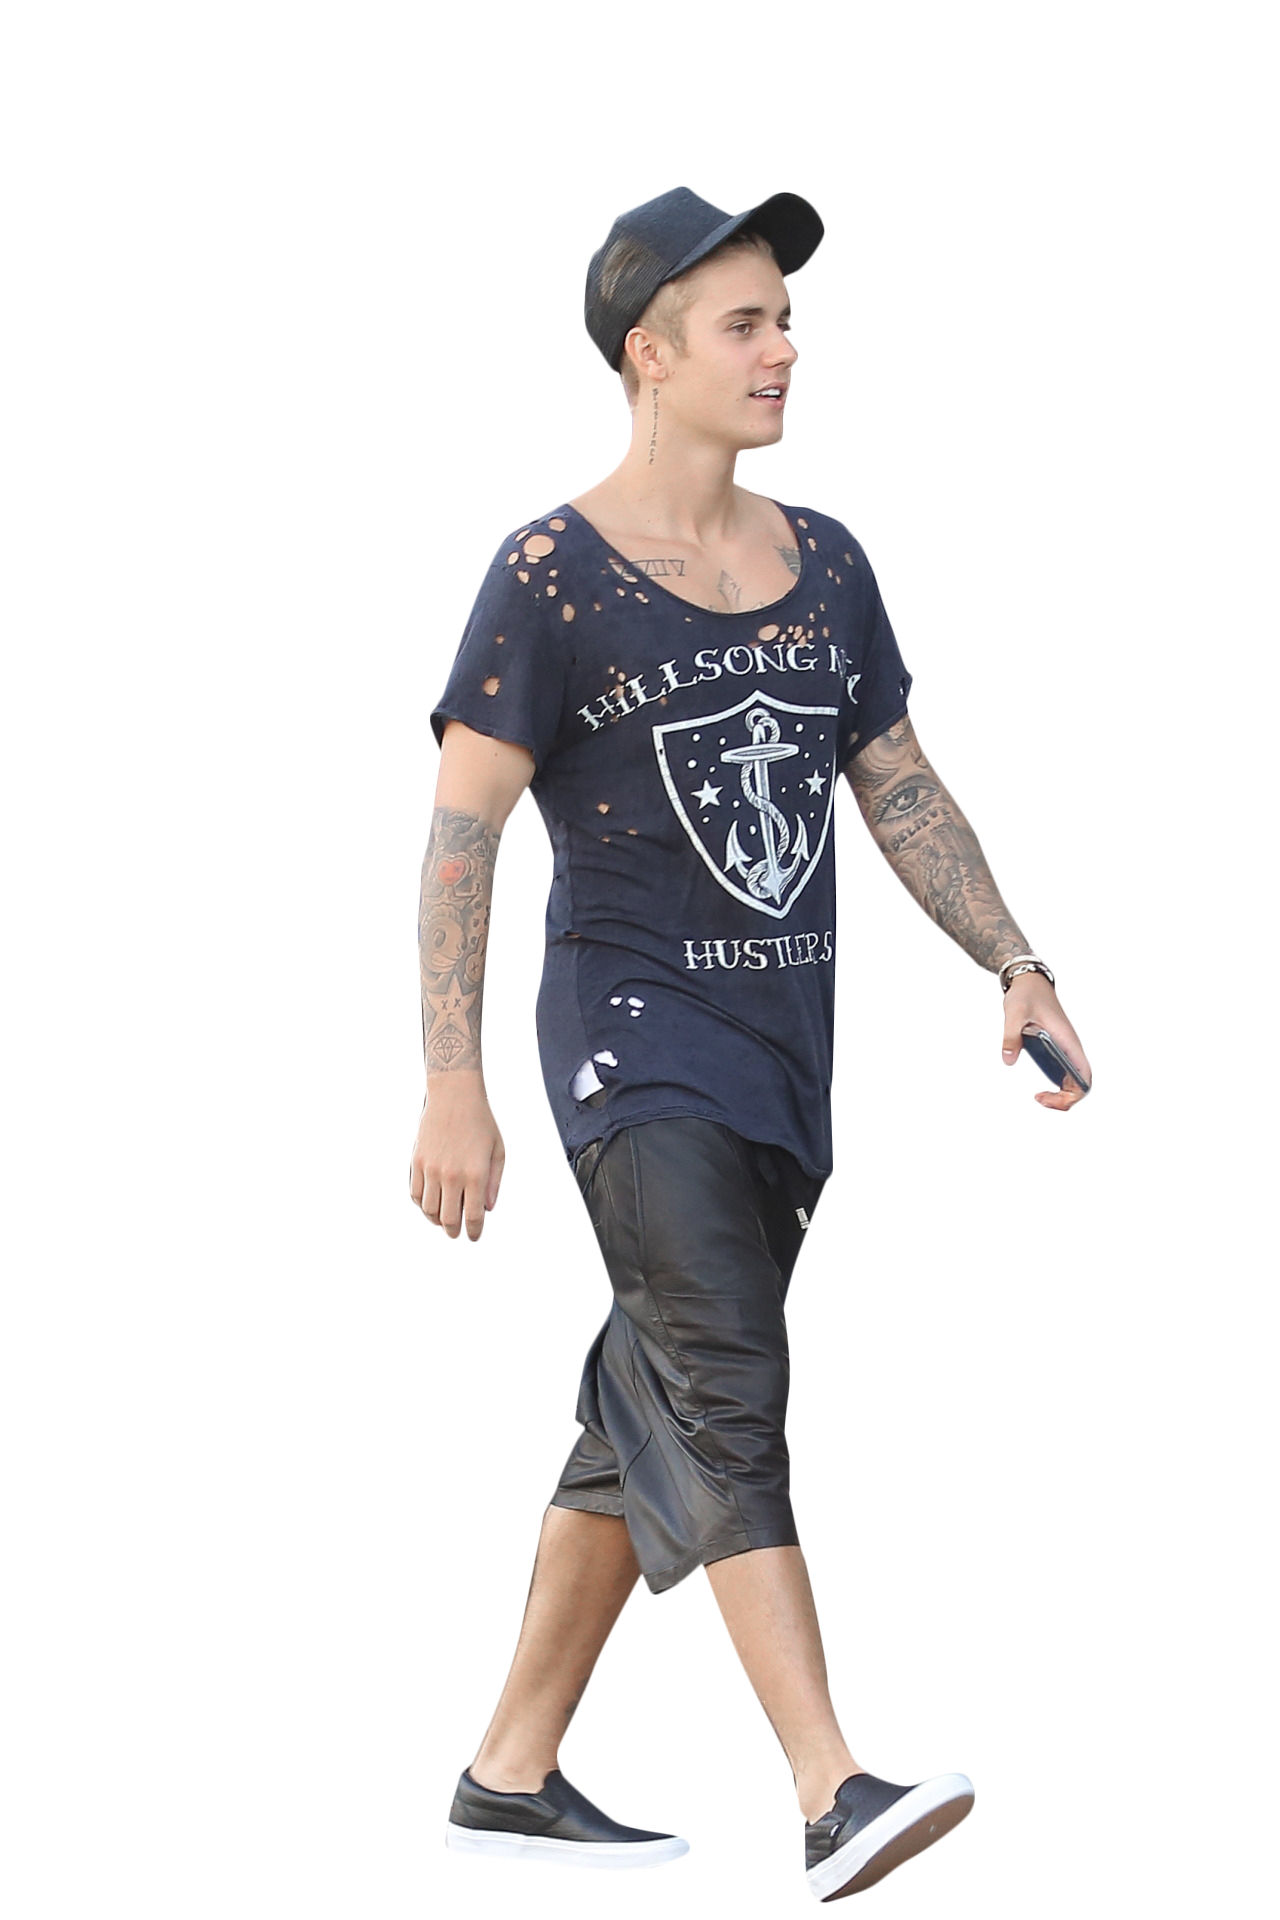 Justin Bieber Walking PNG Image